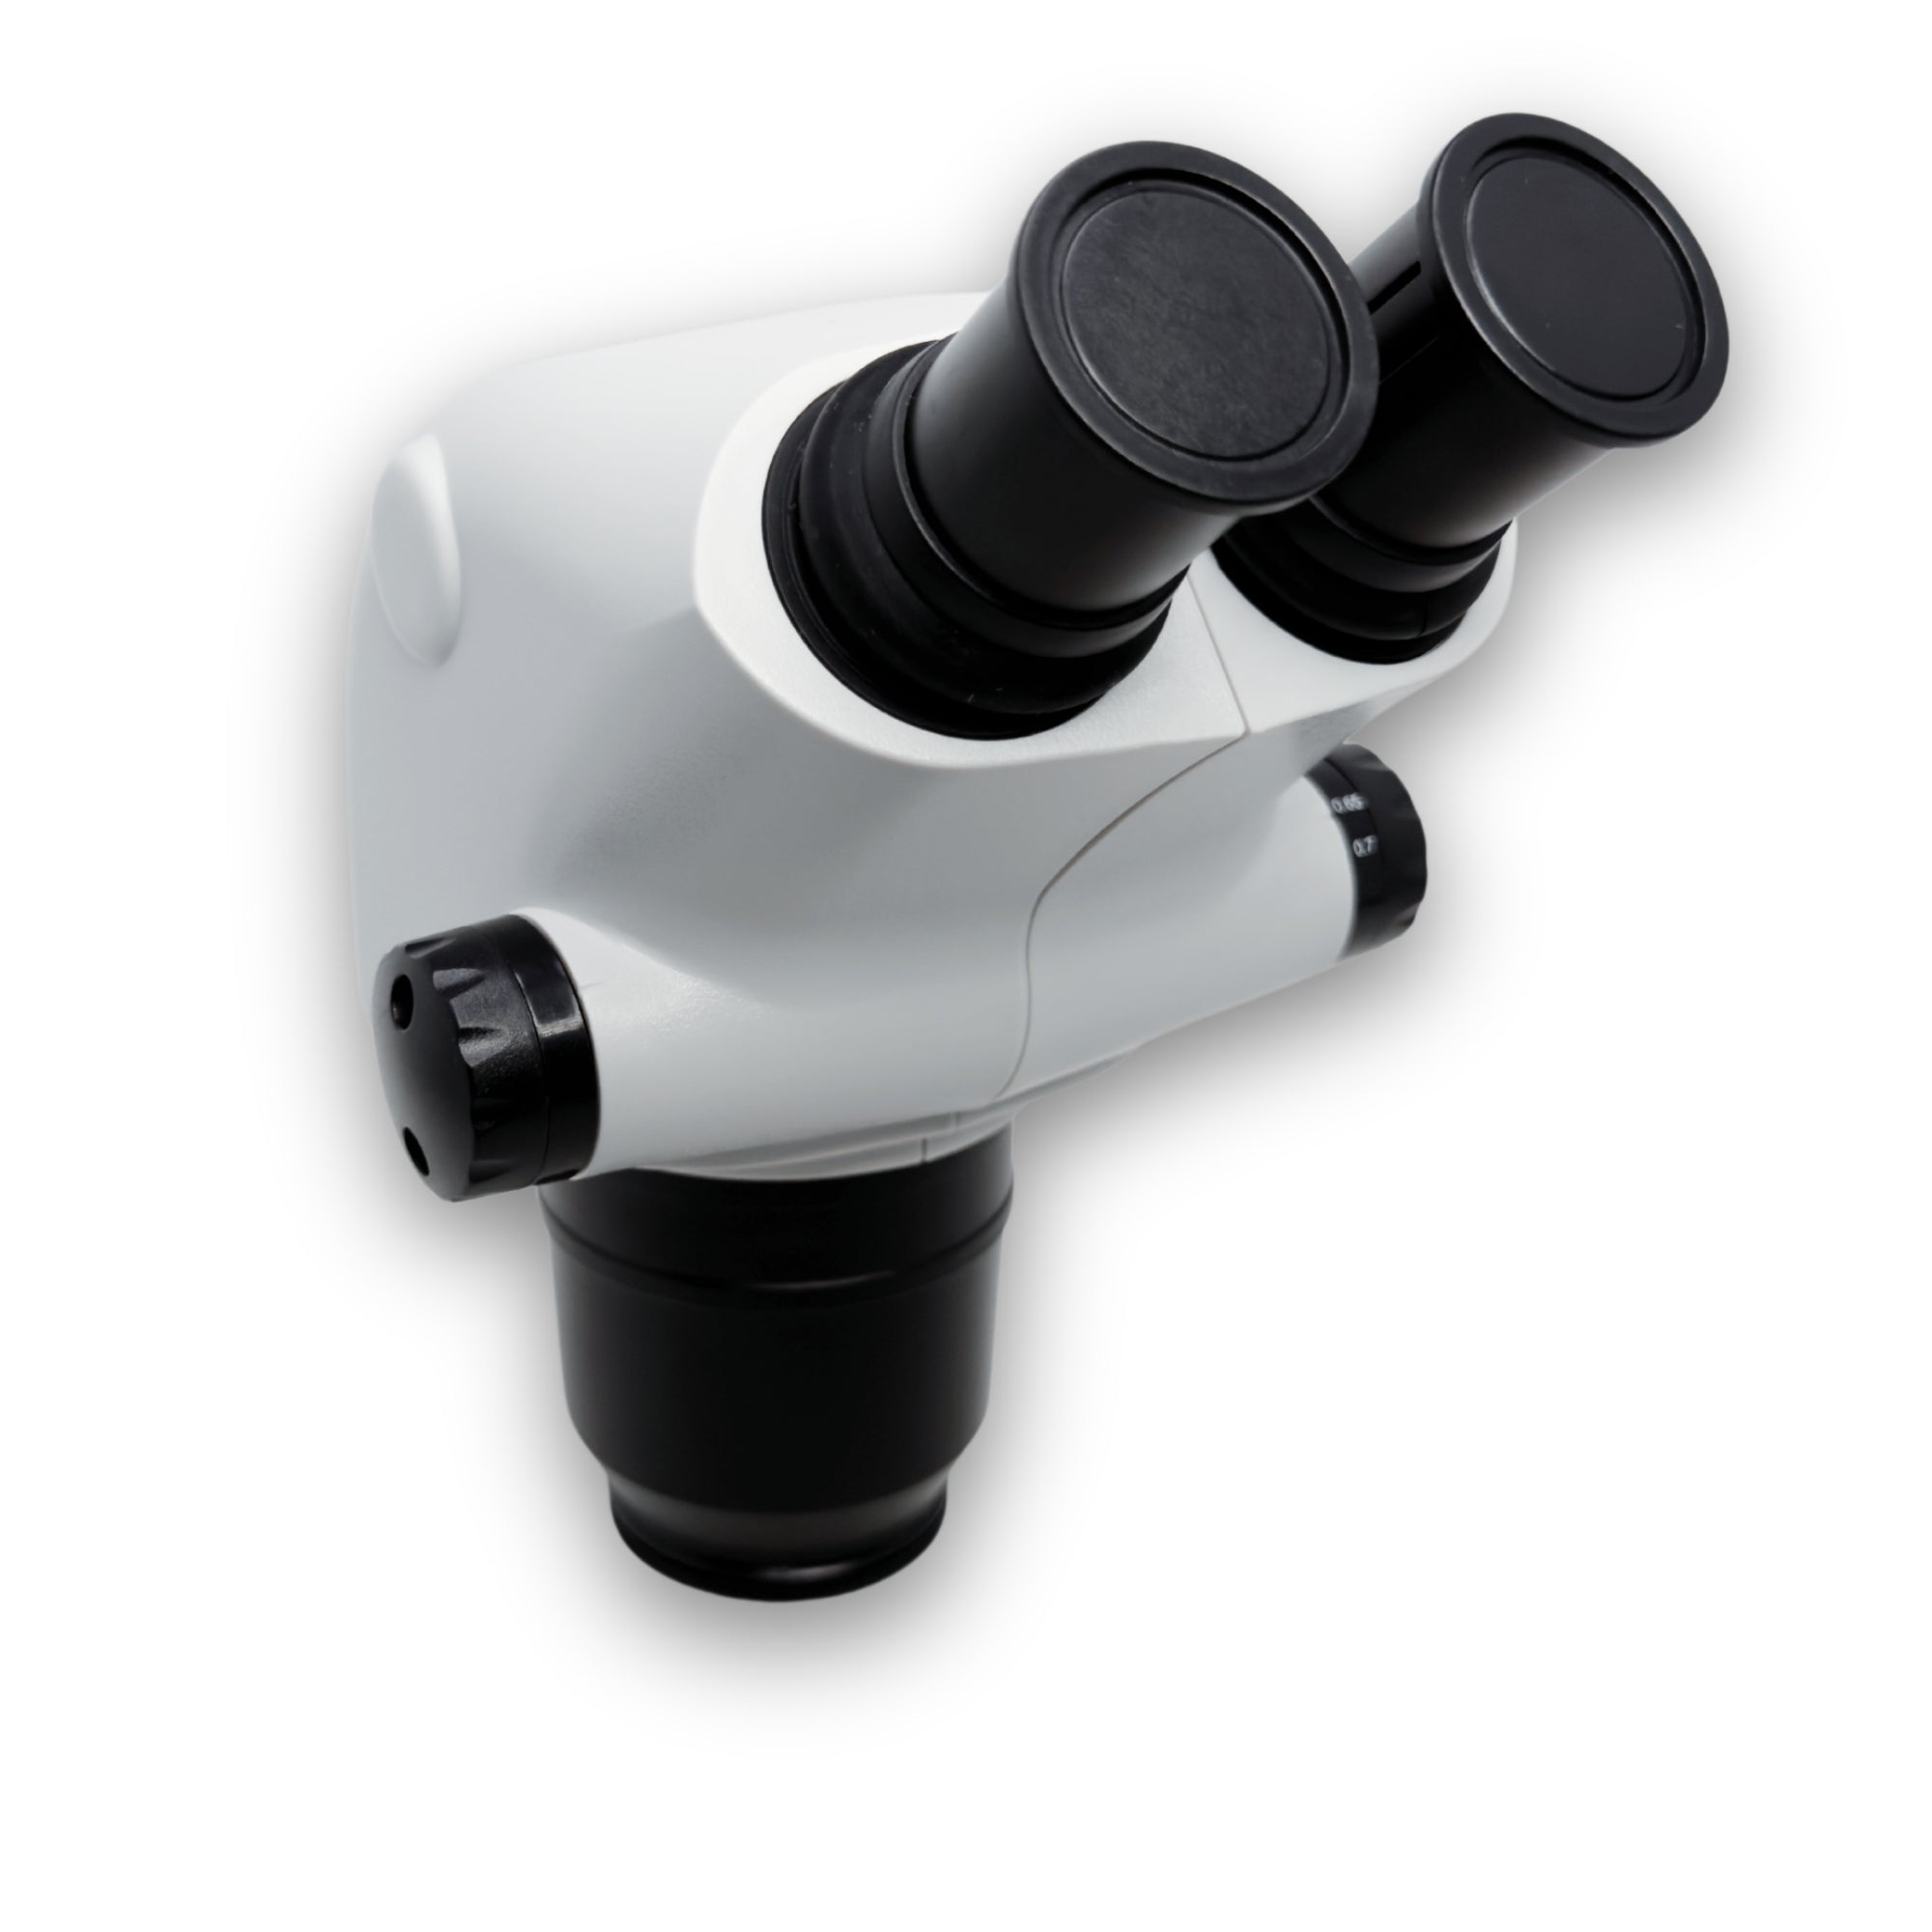 Ensemble de microscope phaser avec pied avec pied destiné à un montage fixe sur une table d'orfèvre ou de phaser